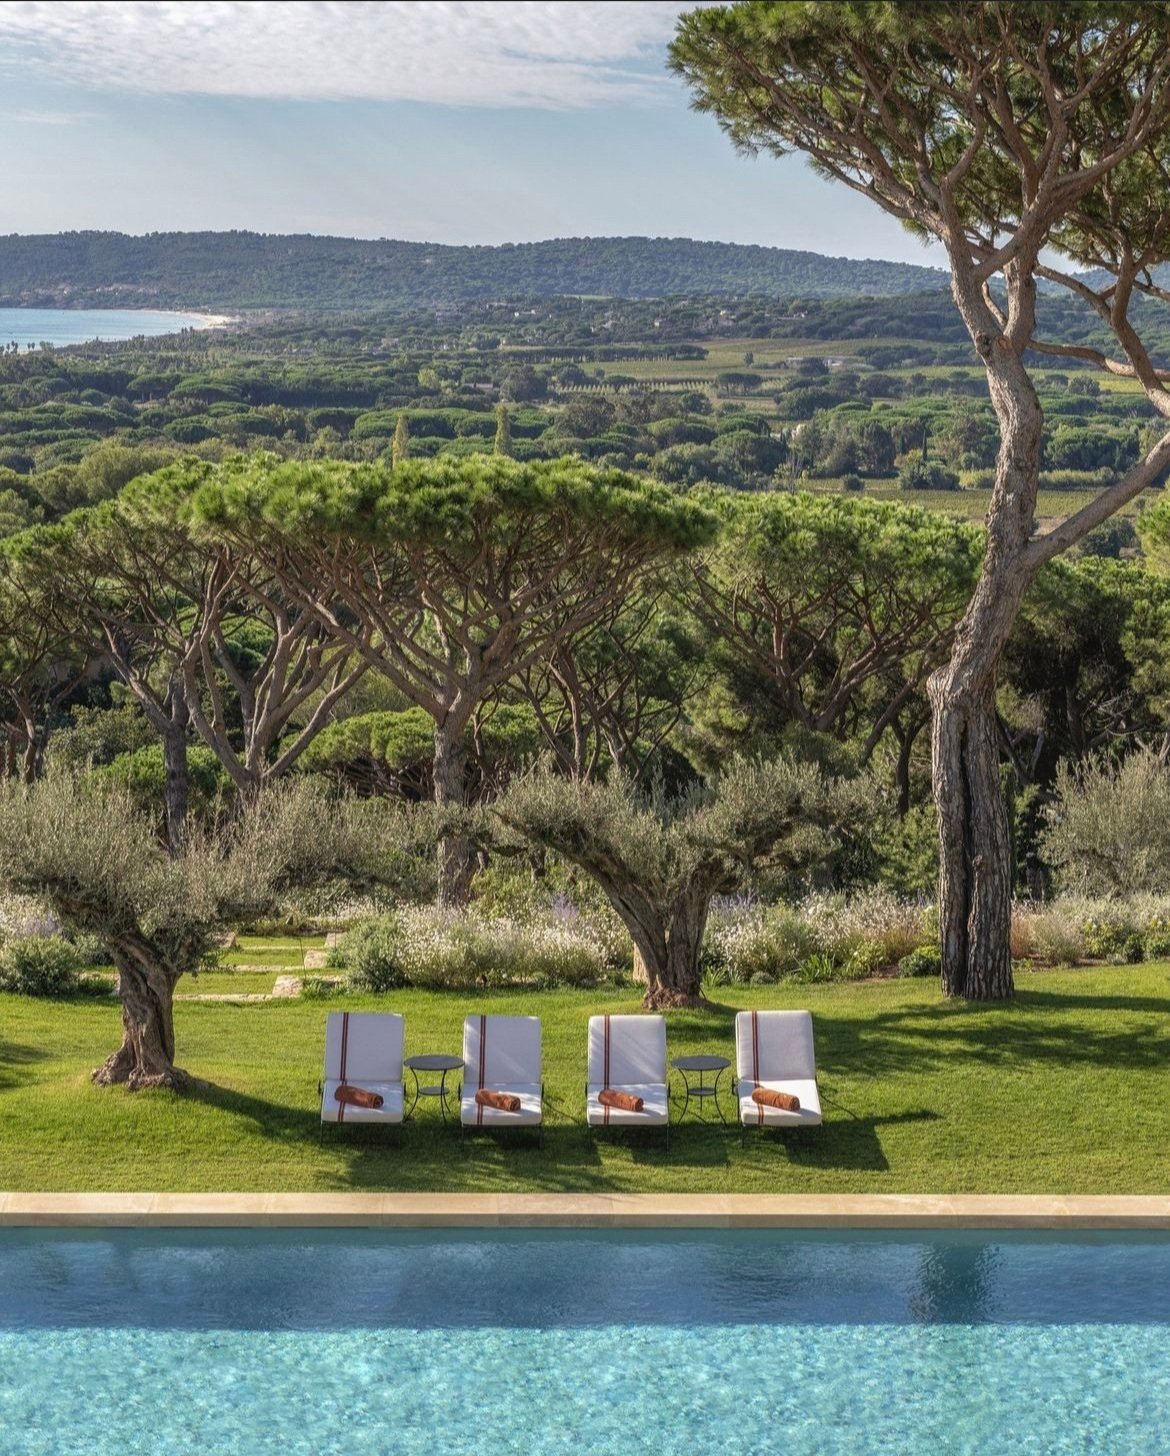 Louis Vuitton's St. Tropez Restaurant Comes With Mediterranean